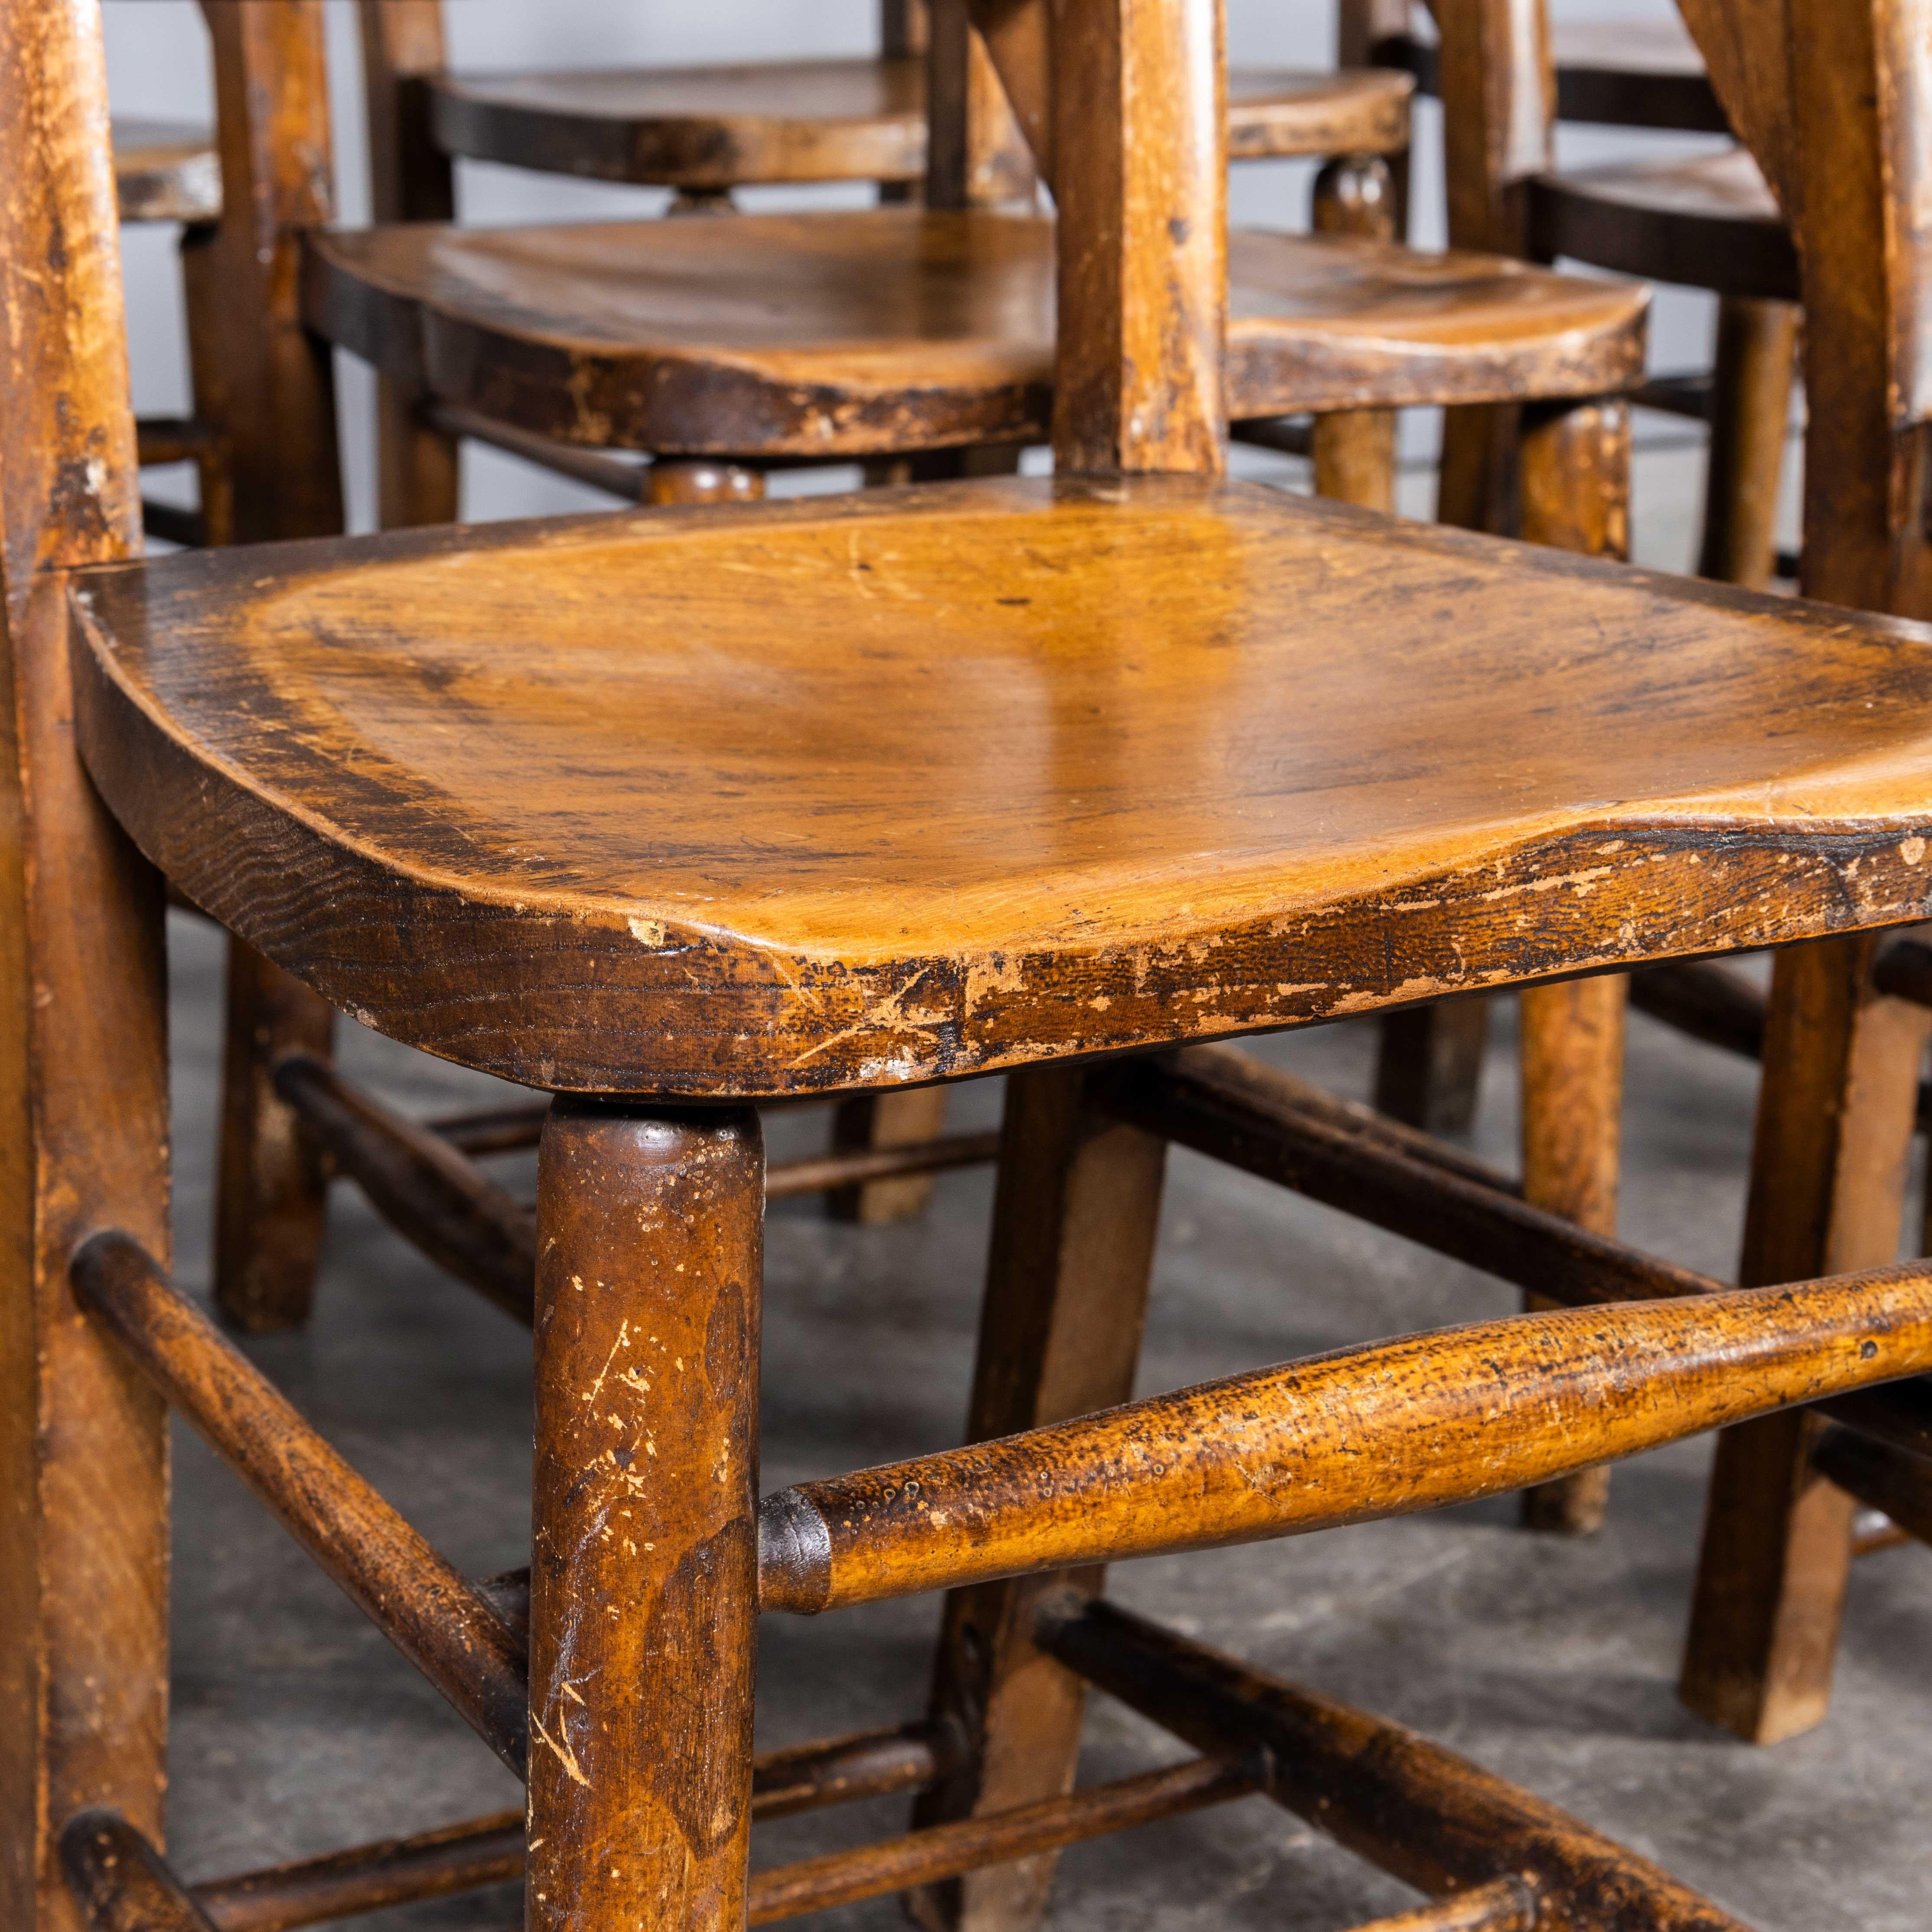 1940's Solid Ash Church's - Chapel Dining Chairs - Gute Menge verfügbar
1940's Solid Ash Church's - Chapel Dining Chairs - Gute Menge verfügbar. England kann auf ein reiches Erbe in der Stuhlherstellung verweisen. Auf dem Höhepunkt der Produktion um